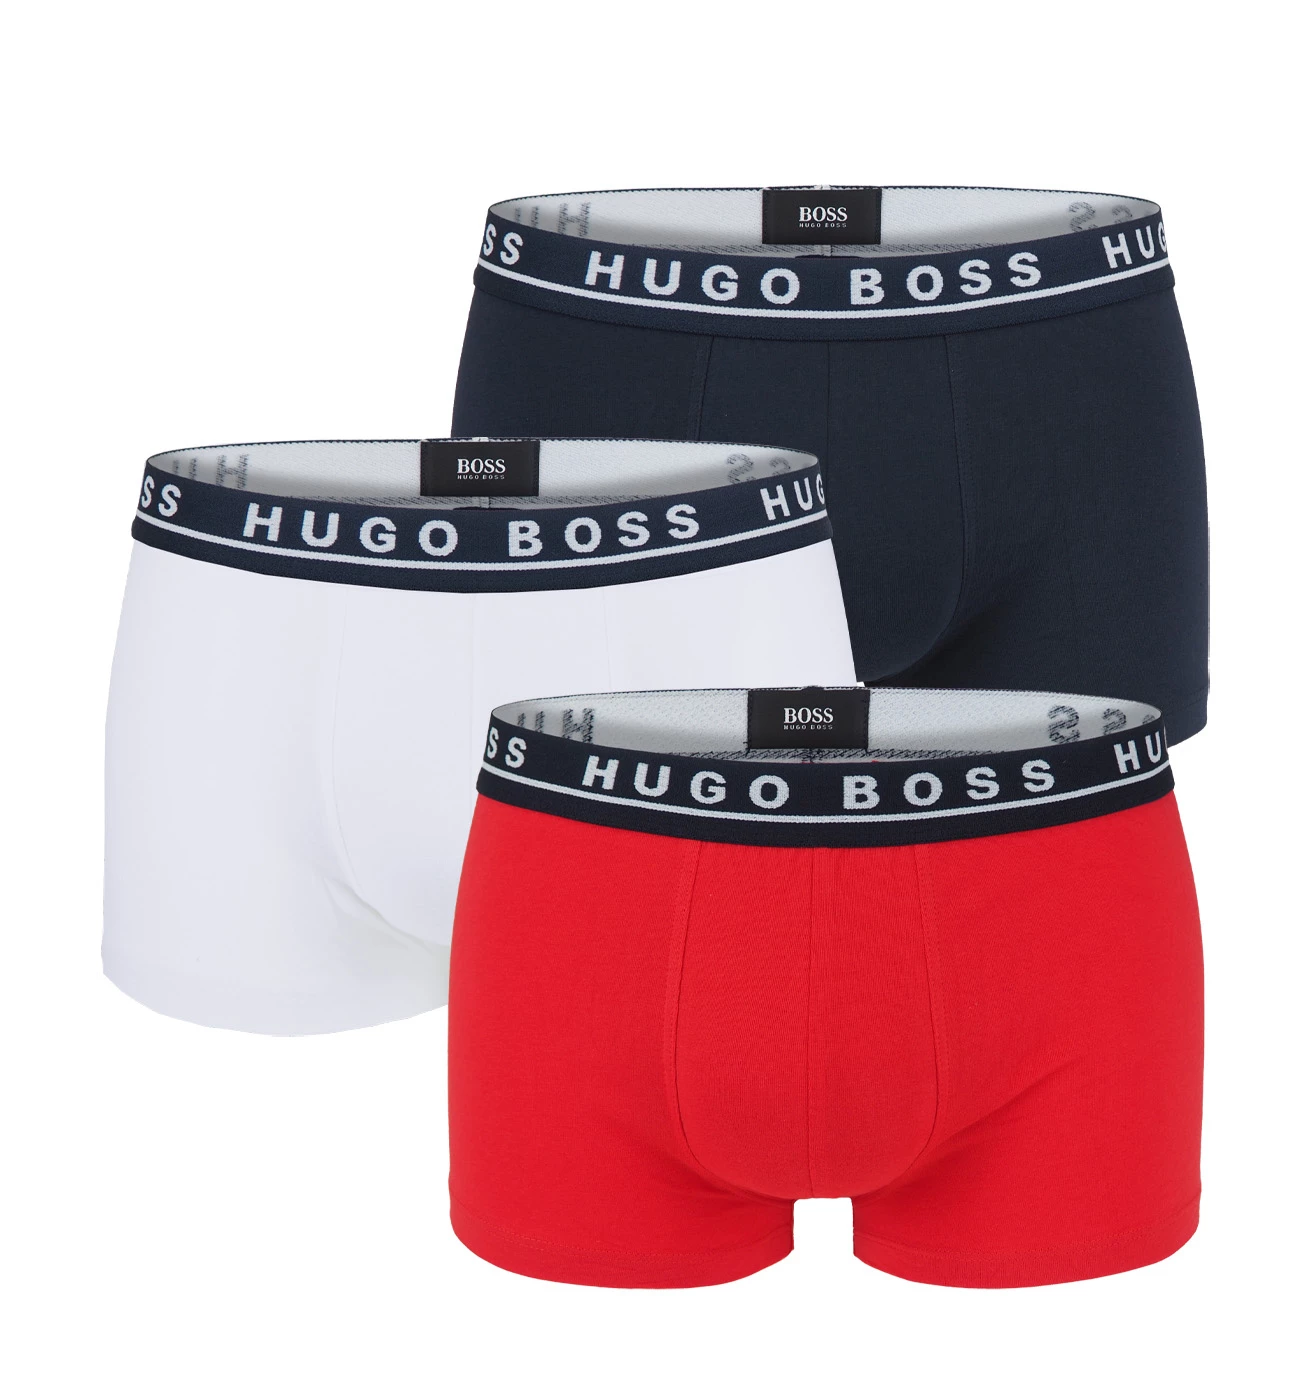 BOSS - 3PACK boxerky red & blue combo (HUGO BOSS)